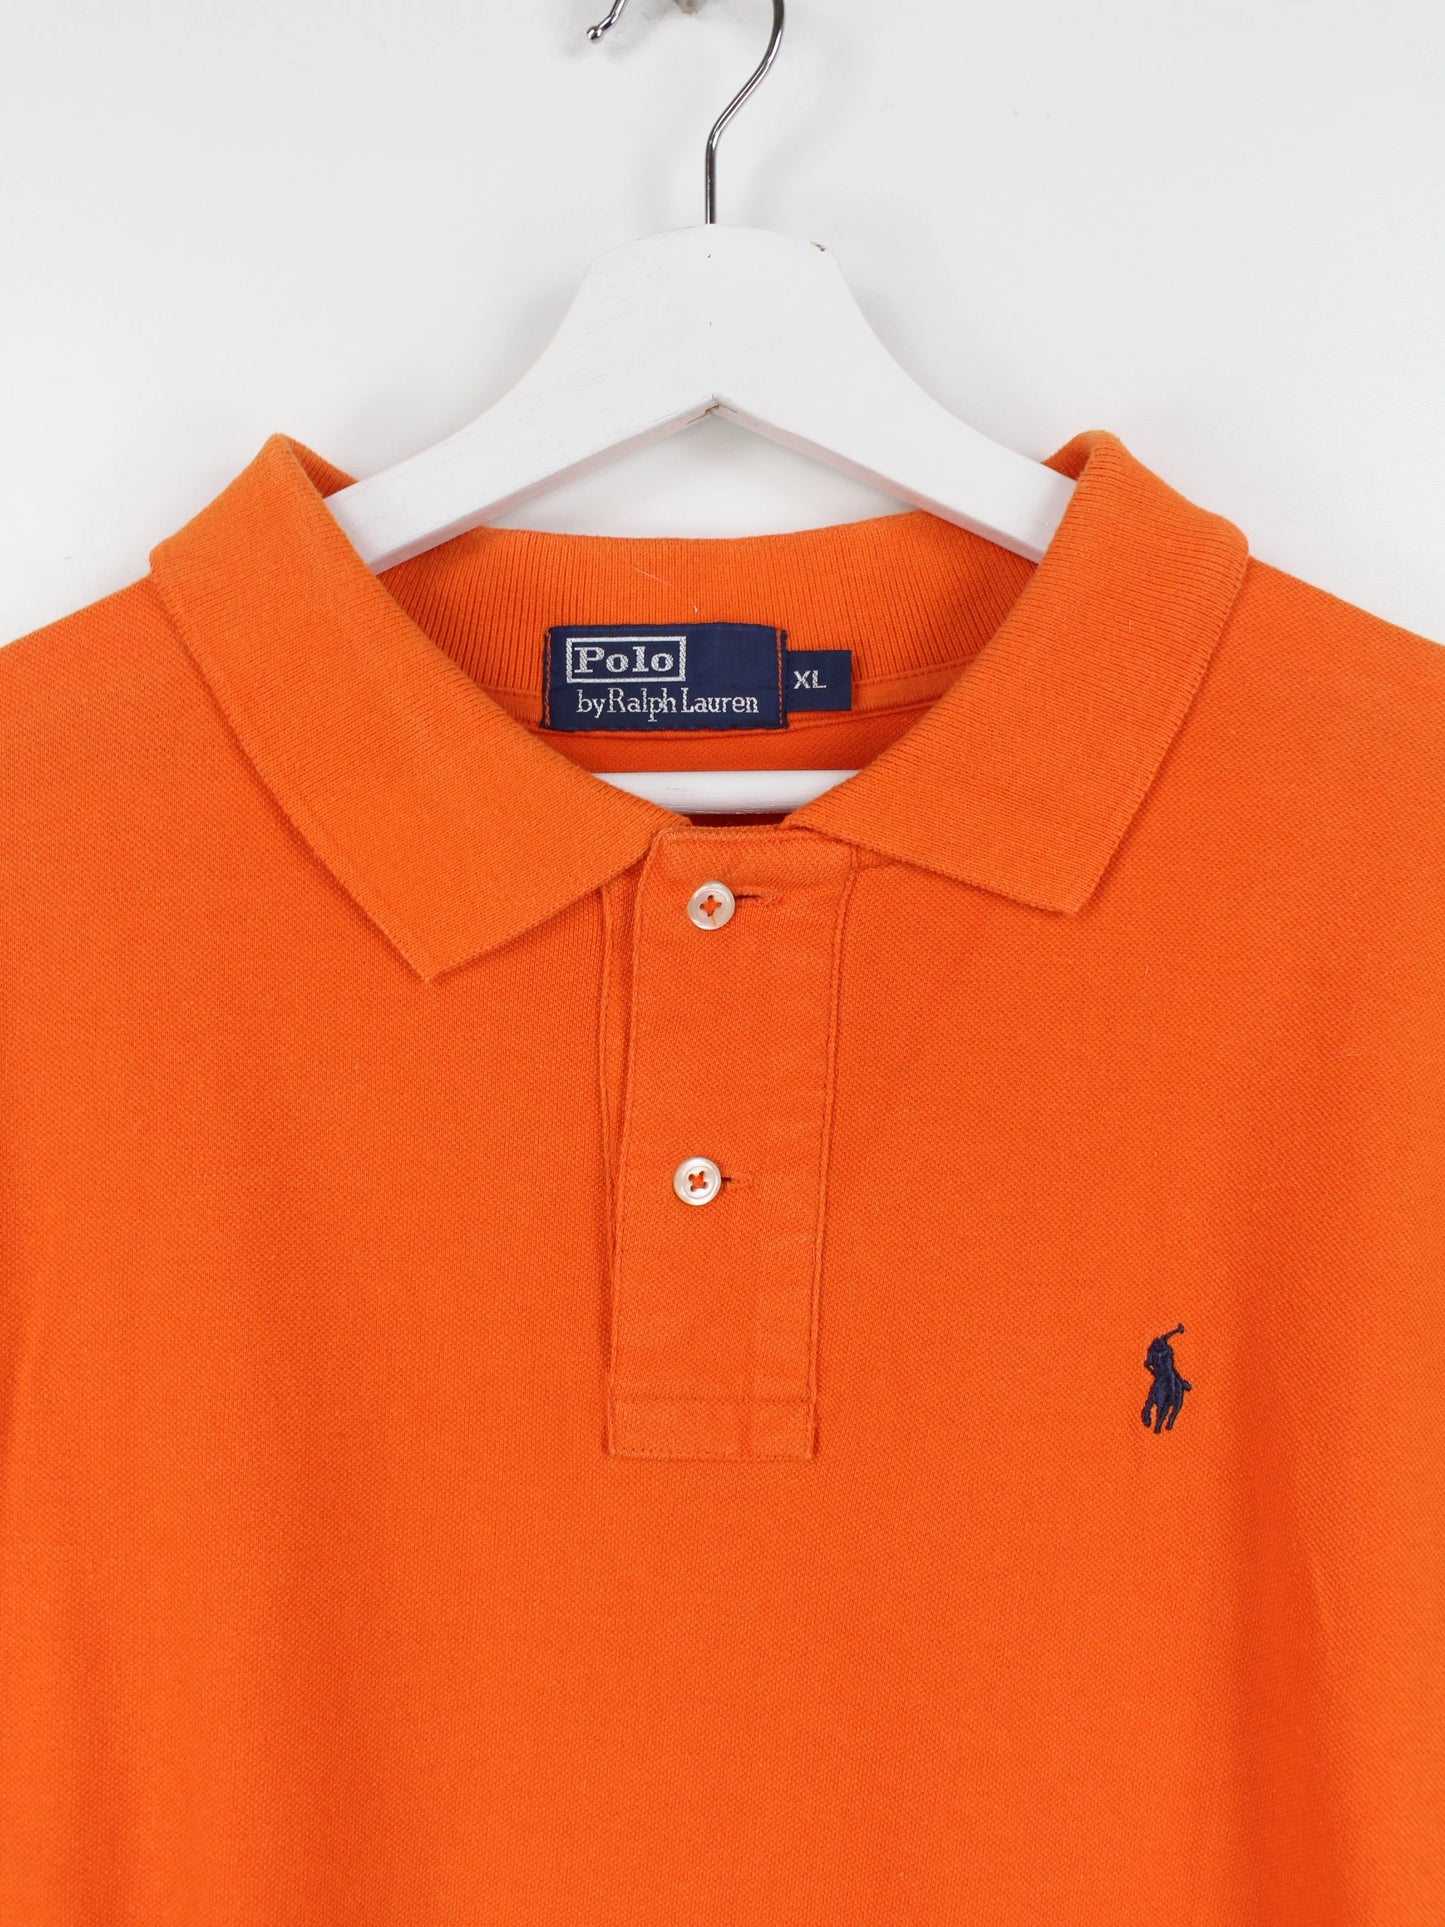 Ralph Lauren Poloshirt Orange XL